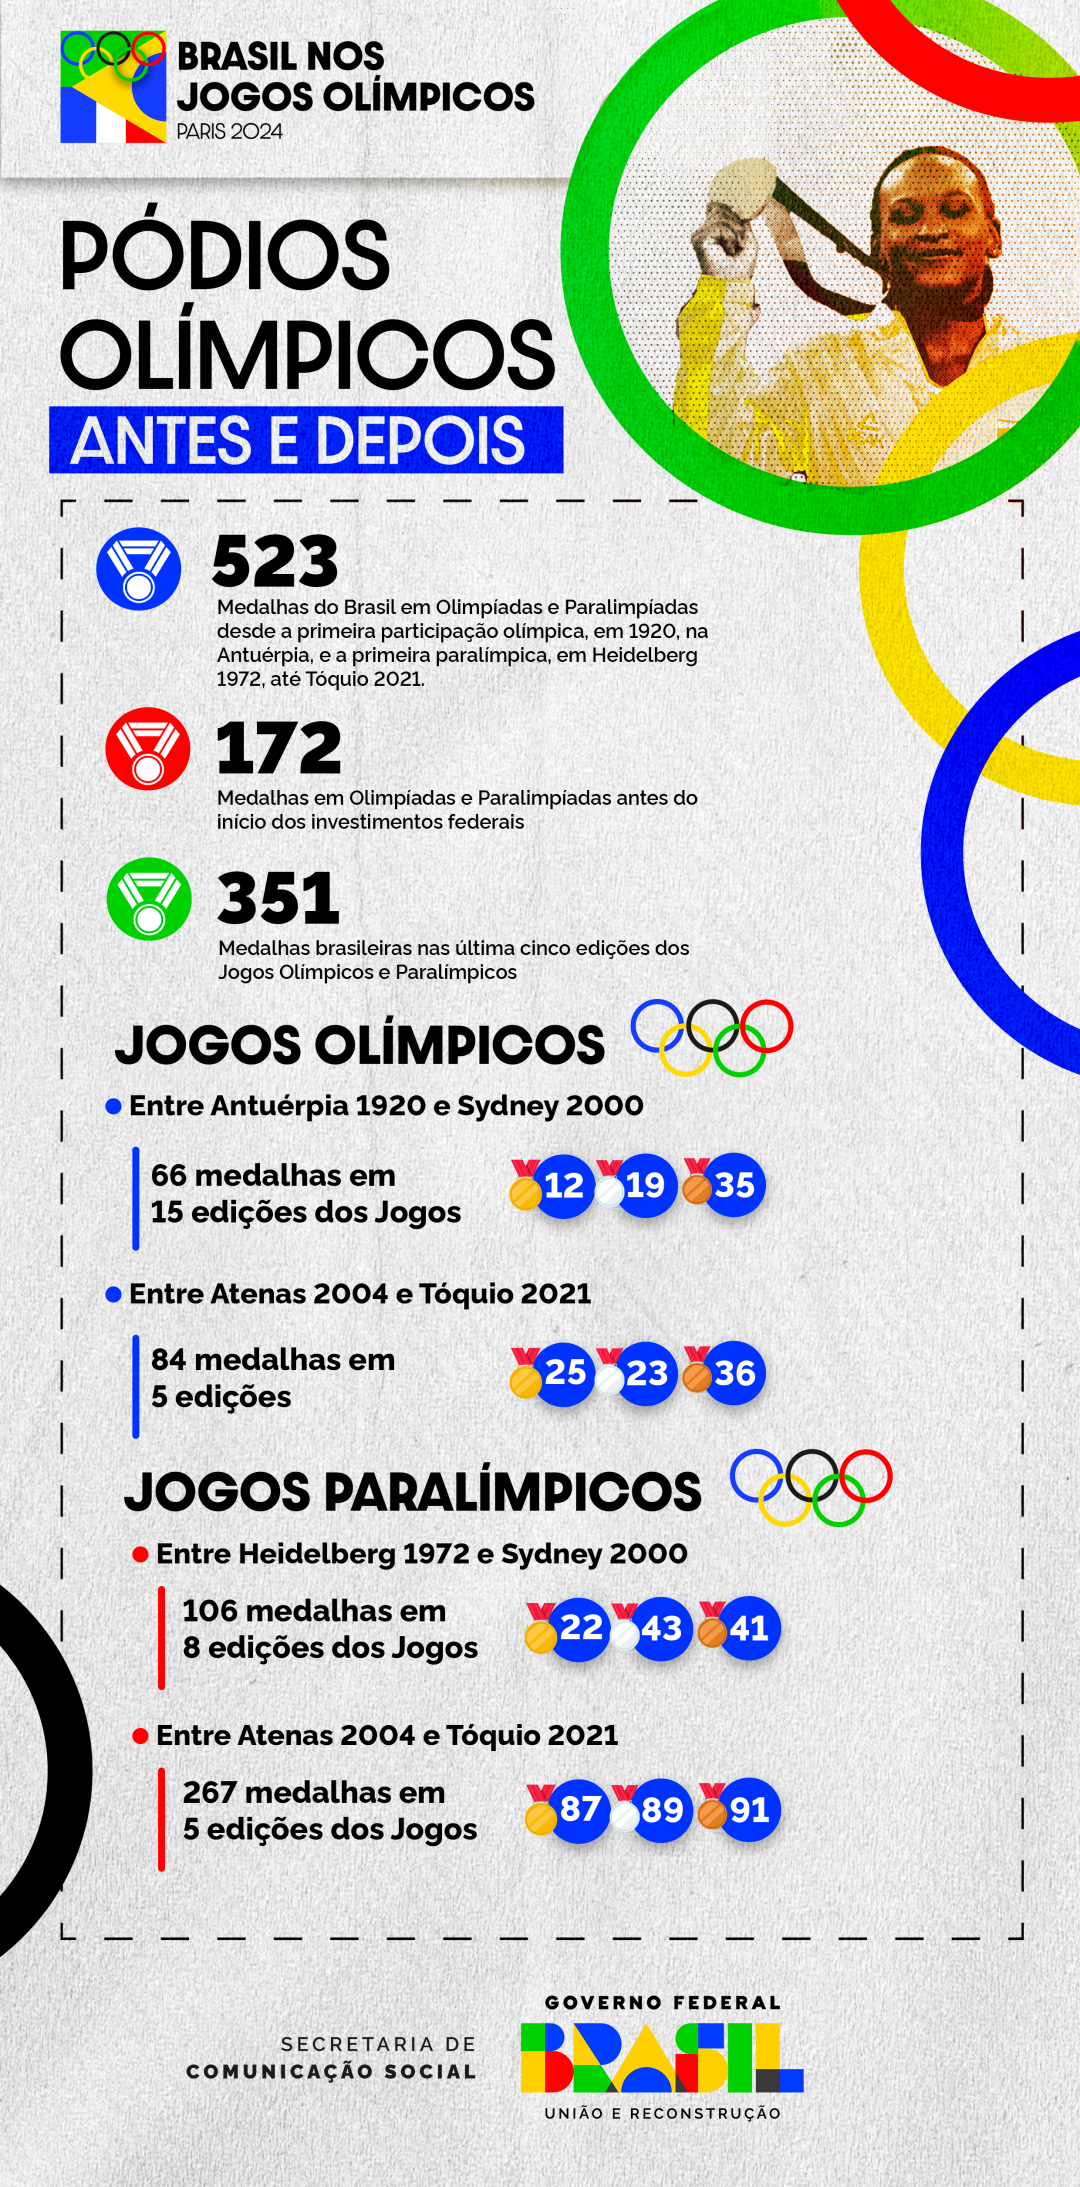 Desempenho olímpico e paralímpico do Brasil antes e depois da implementação de leis e programas federais que mudaram o esporte